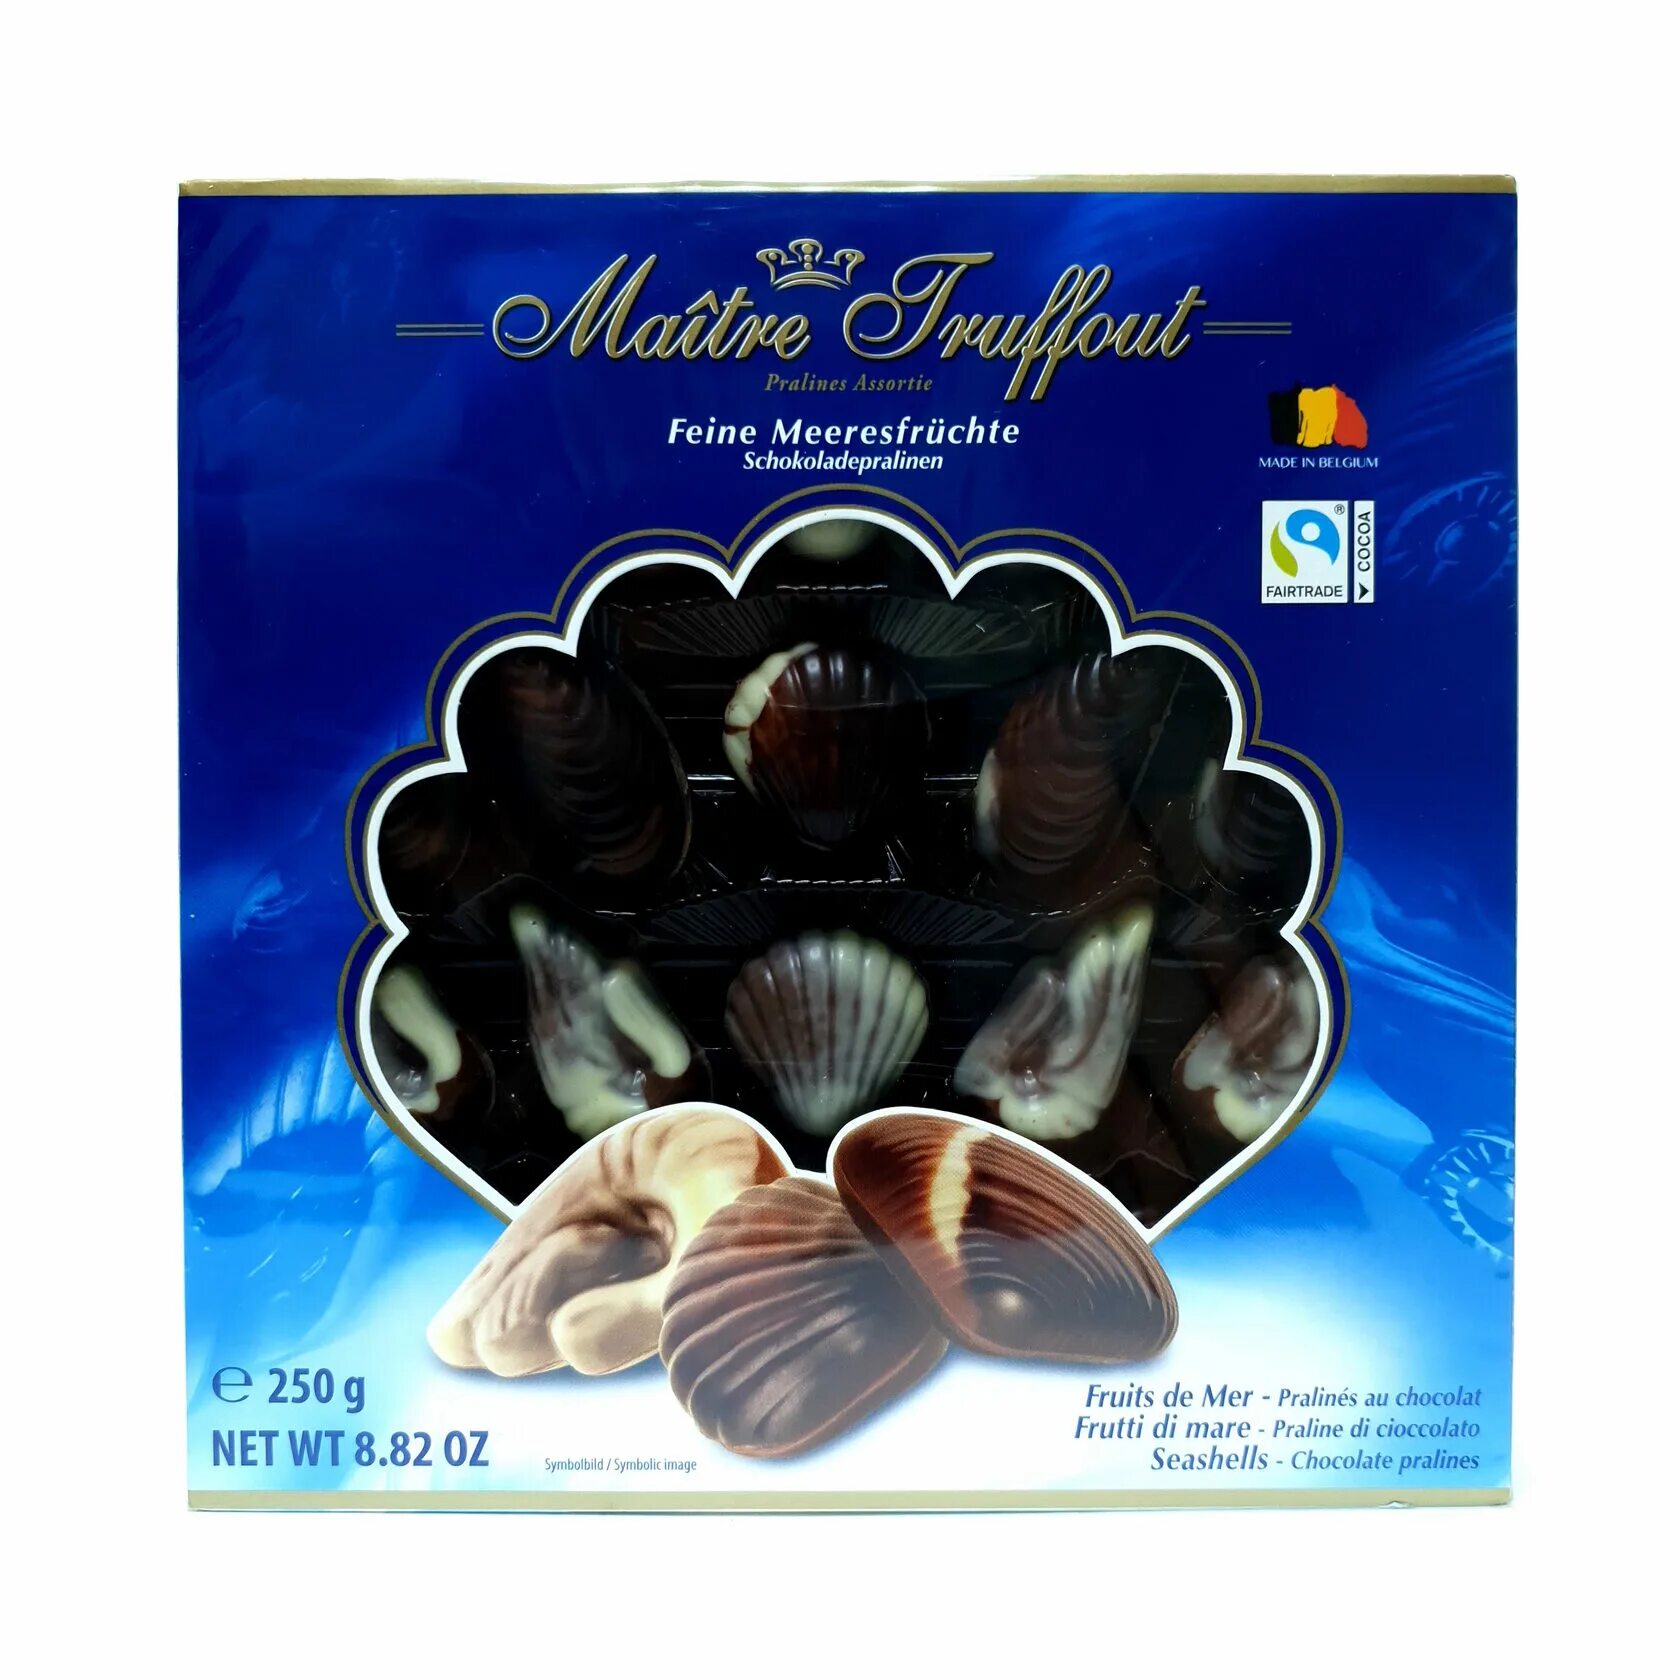 Конфеты Maitre Truffout ракушки. Шоколадные конфеты ракушки Maitre Truffout 250гр. Конфеты ракушки финские. Конфеты бельгийские ракушки в коробке. Купить конфеты ракушки